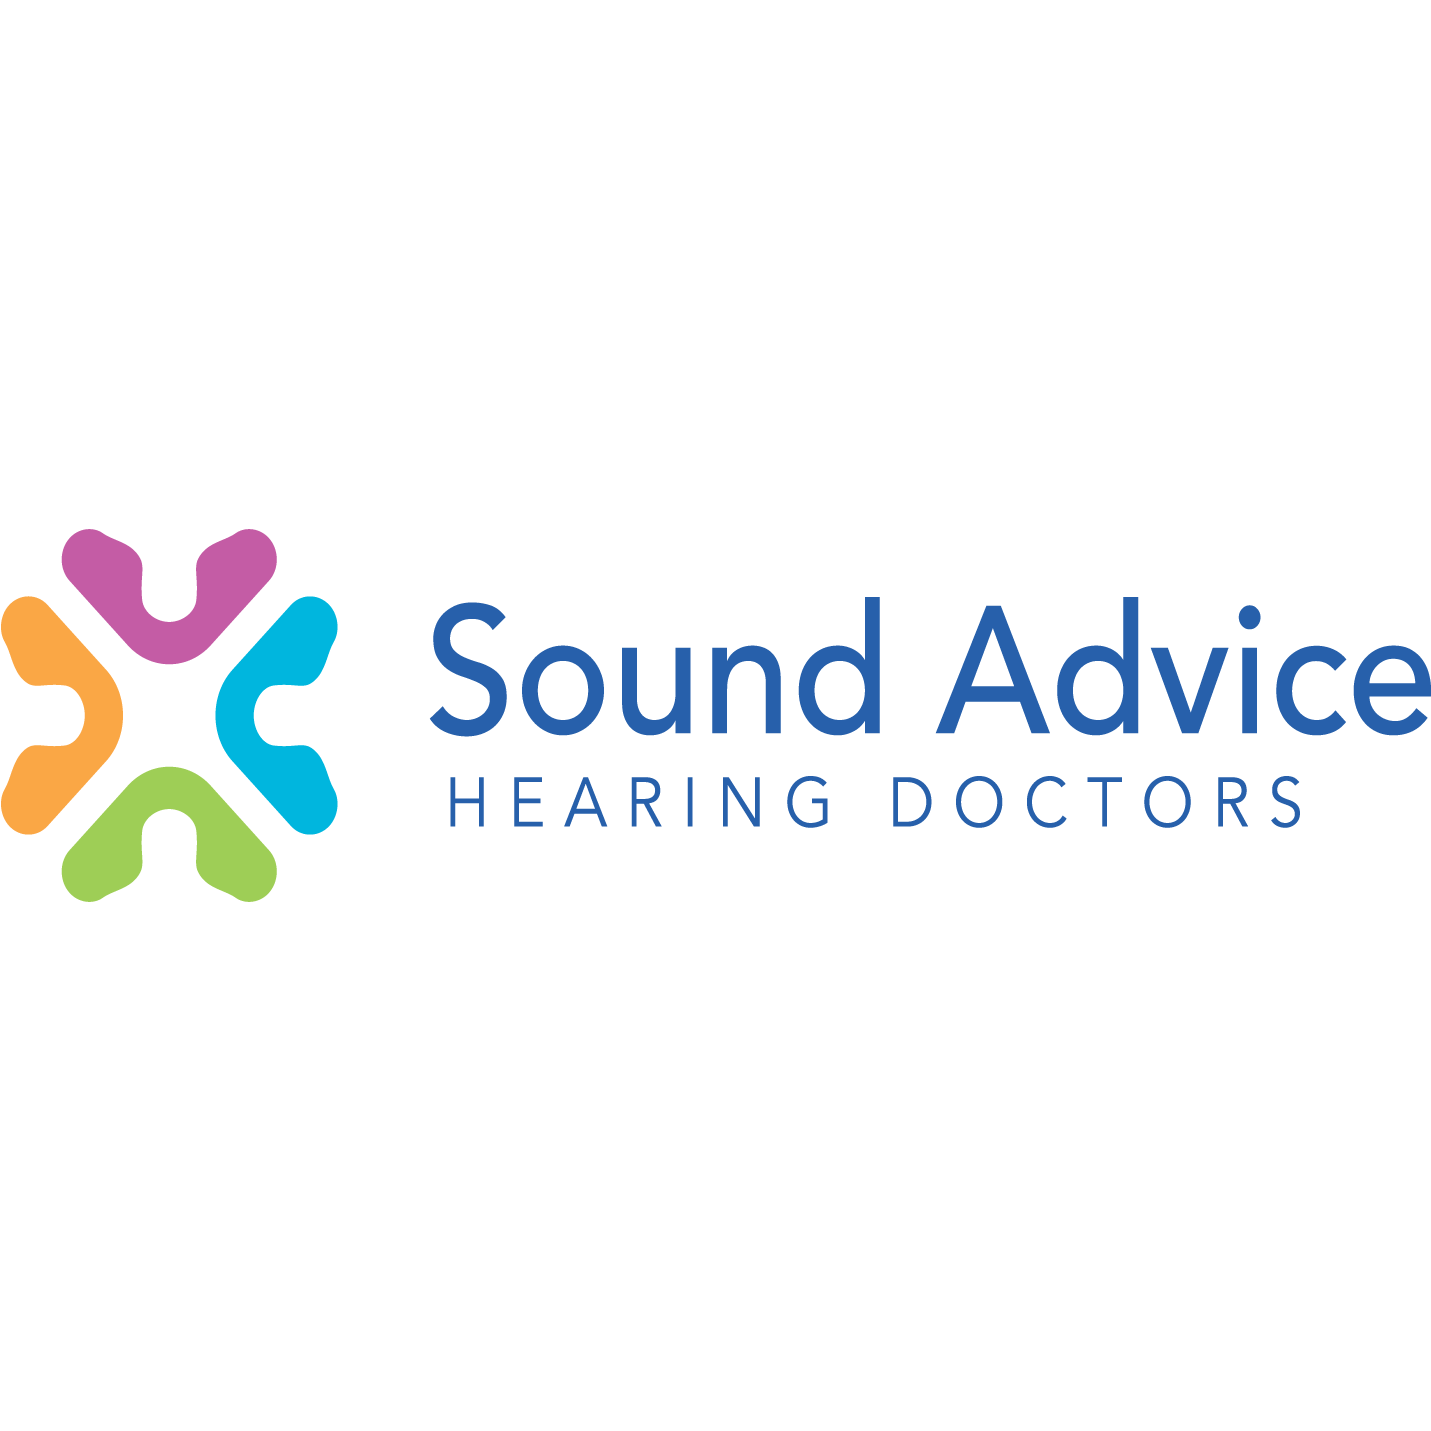 Sound Advice Hearing Doctors - Oklahoma City